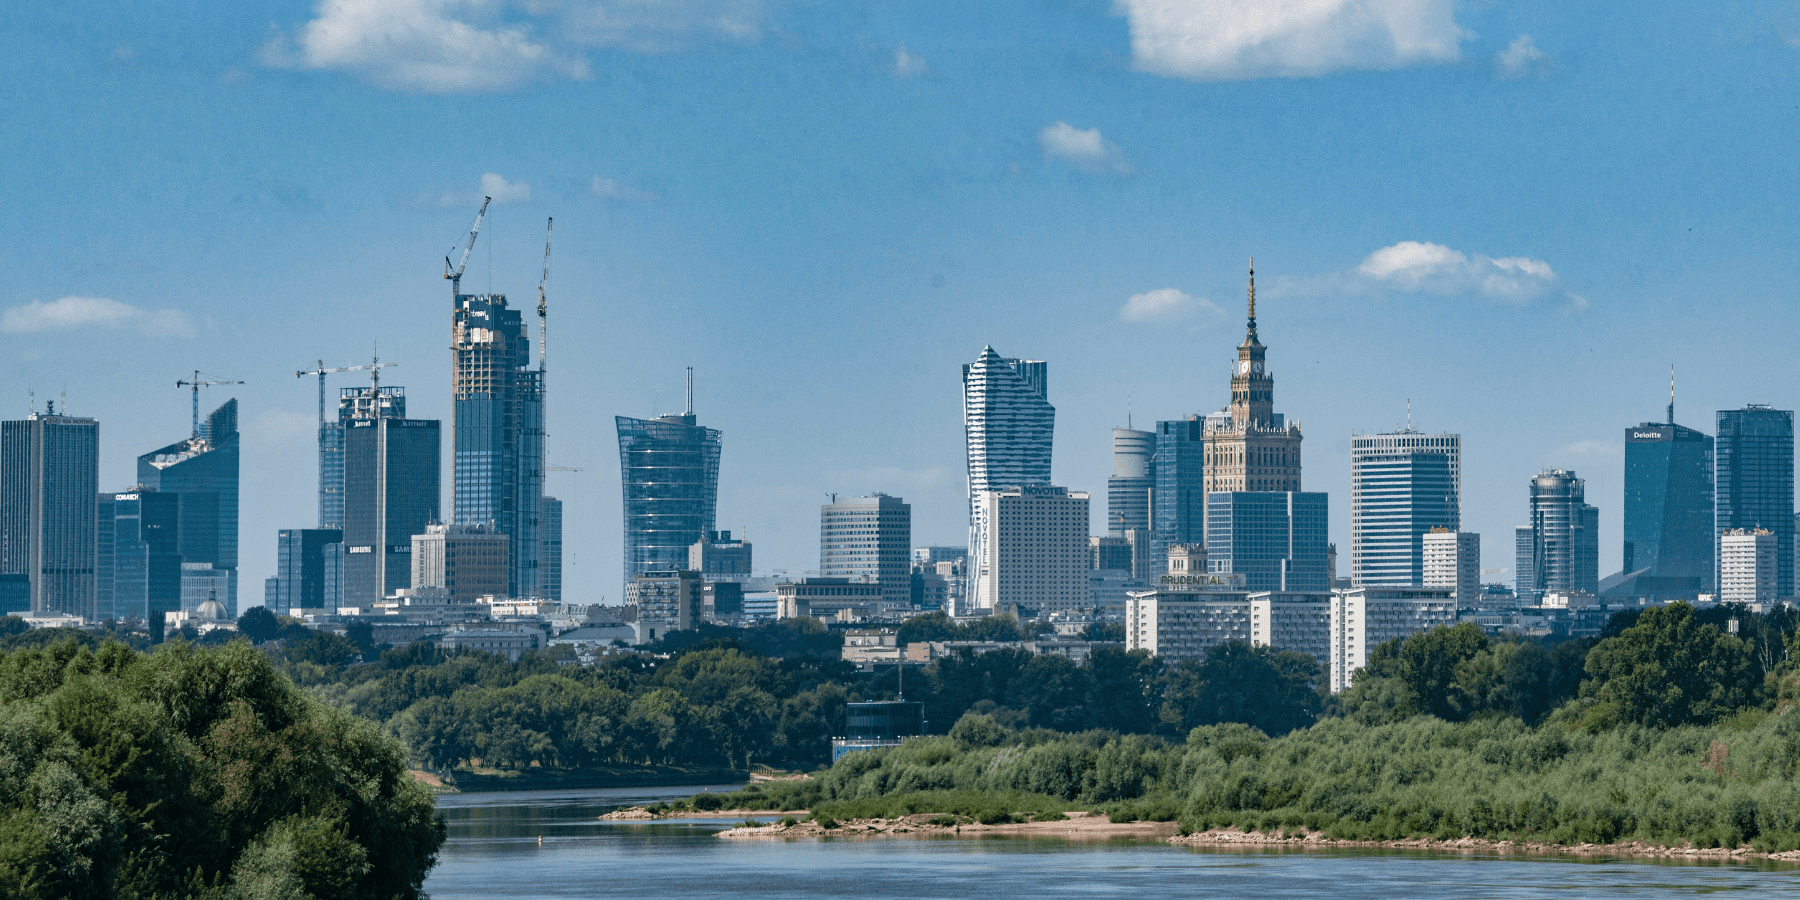 Warszawa w ogonie rankingu miast z ładowarkami do aut elektrycznych